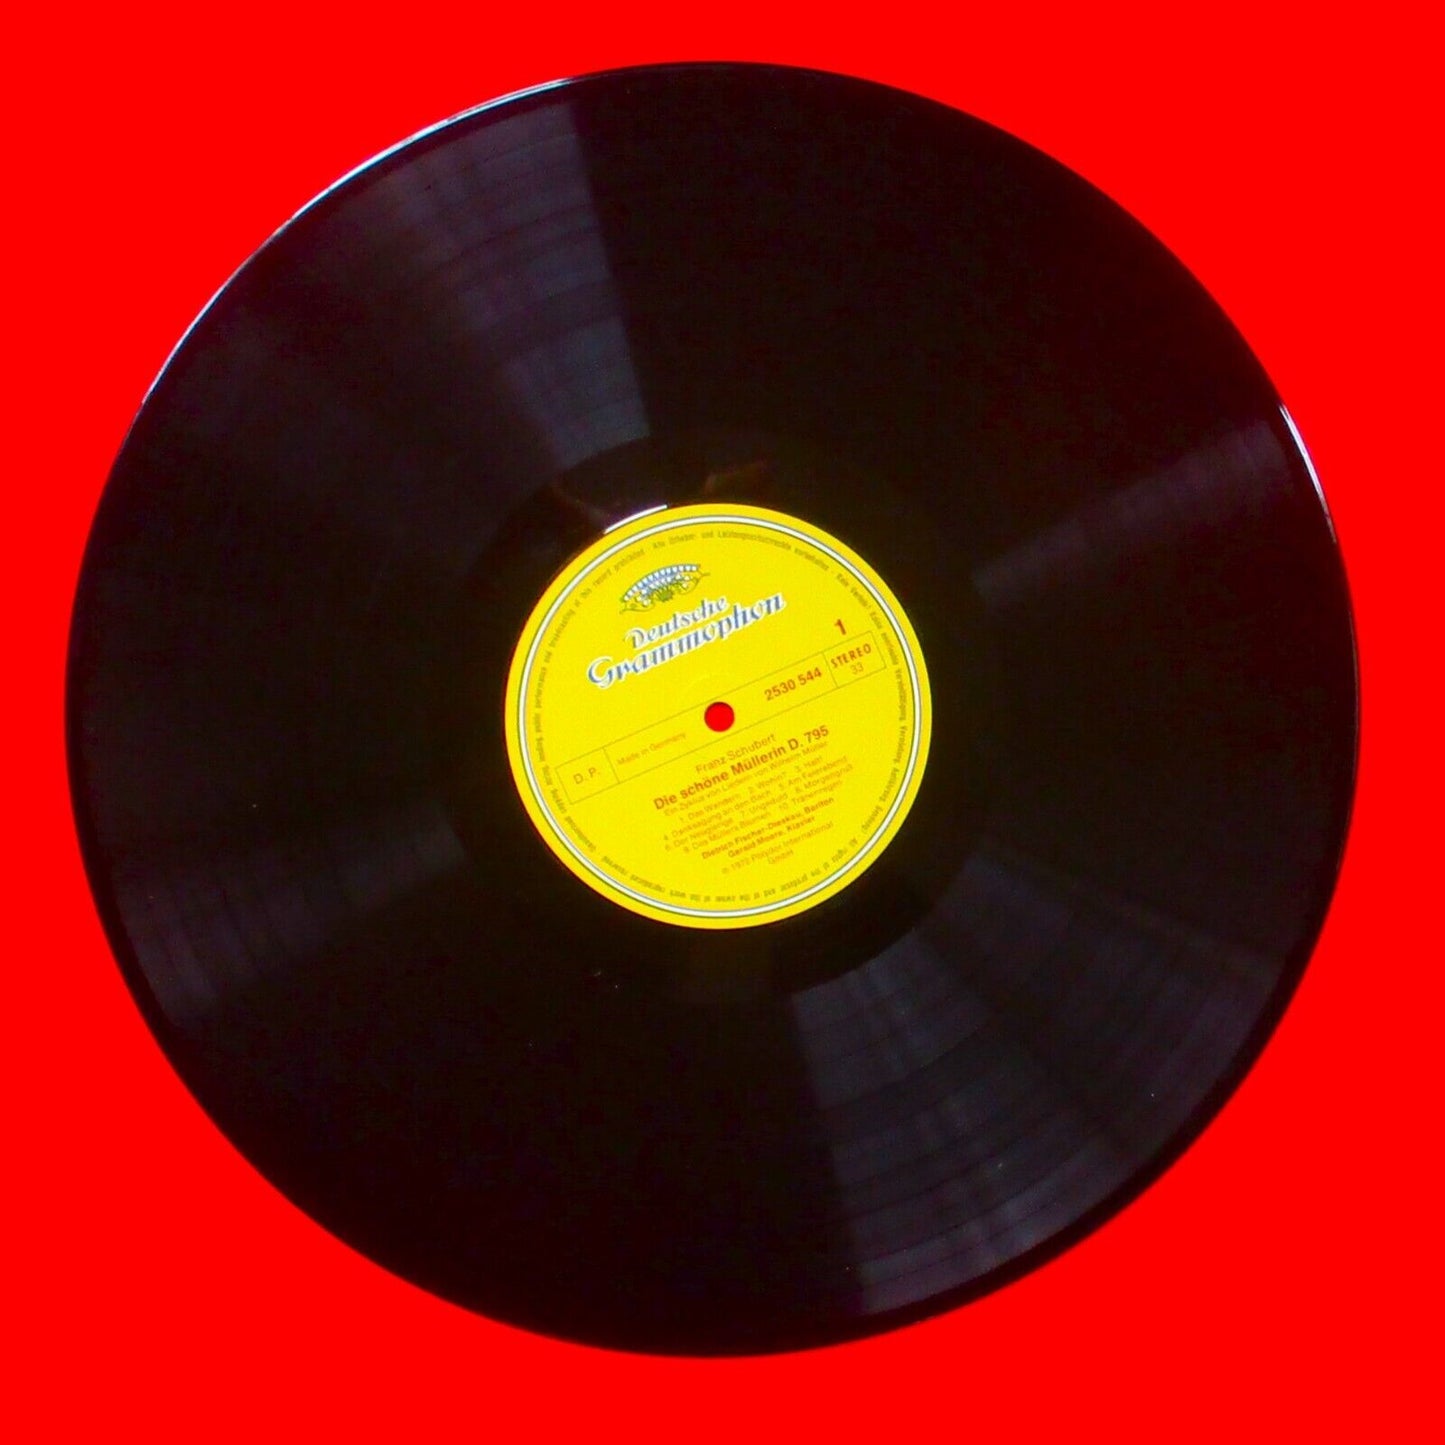 Franz Schubert Gerald Moore The Beautiful Miller Vinyl Album LP 1972